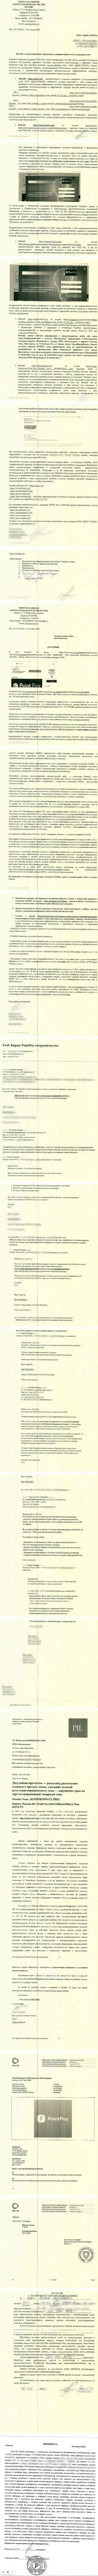 Очередное письмо от ПоинтПай Ио, в котором они говорят, что они не обманщики